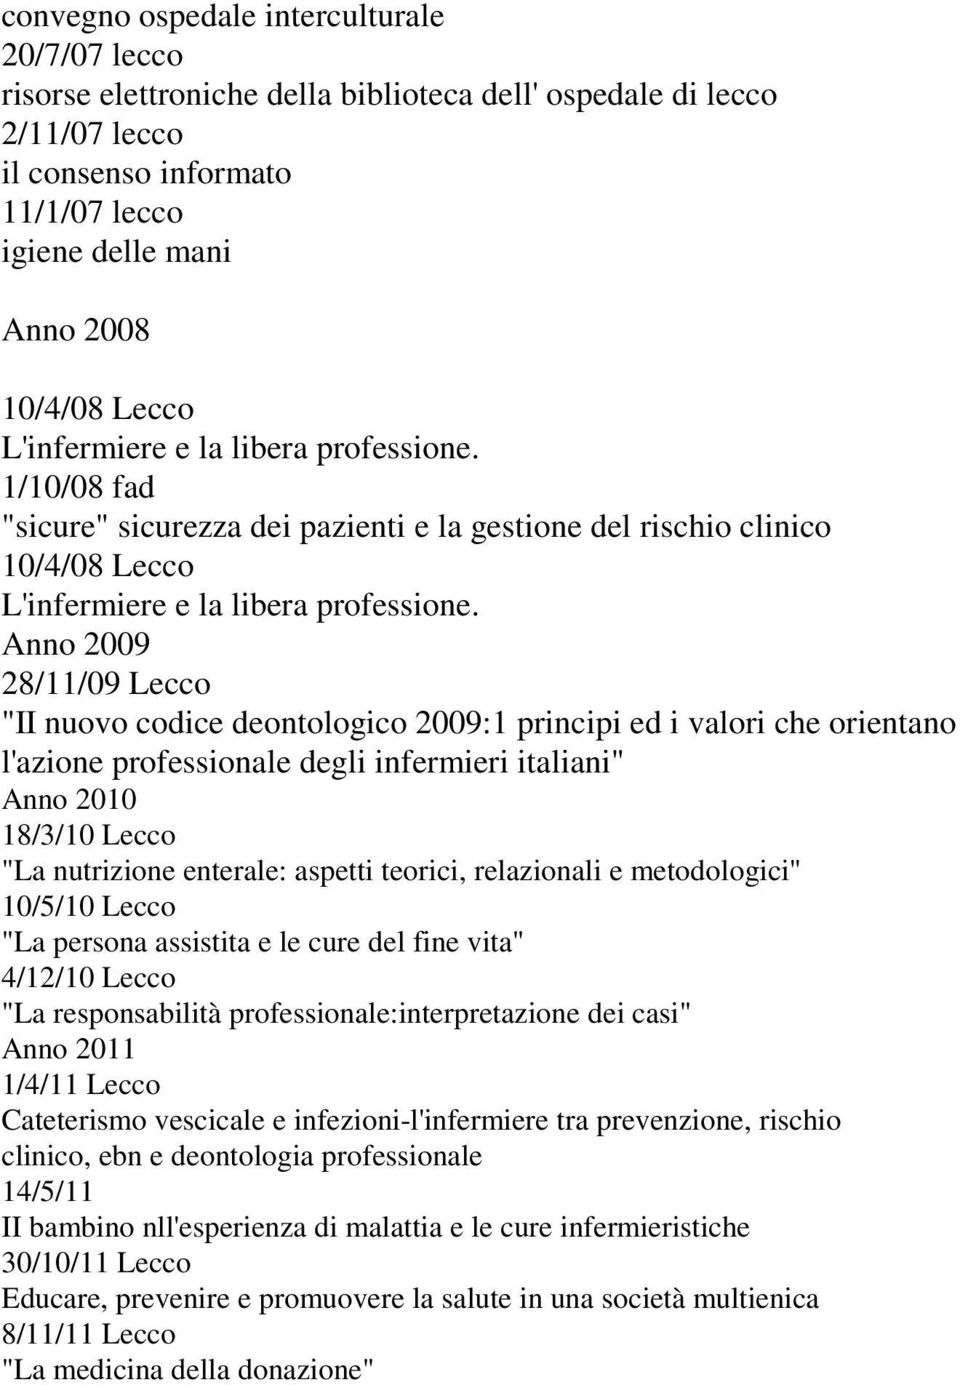 Anno 2009 28/11/09 Lecco "II nuovo codice deontologico 2009:1 principi ed i valori che orientano l'azione professionale degli infermieri italiani" Anno 2010 18/3/10 Lecco "La nutrizione enterale: